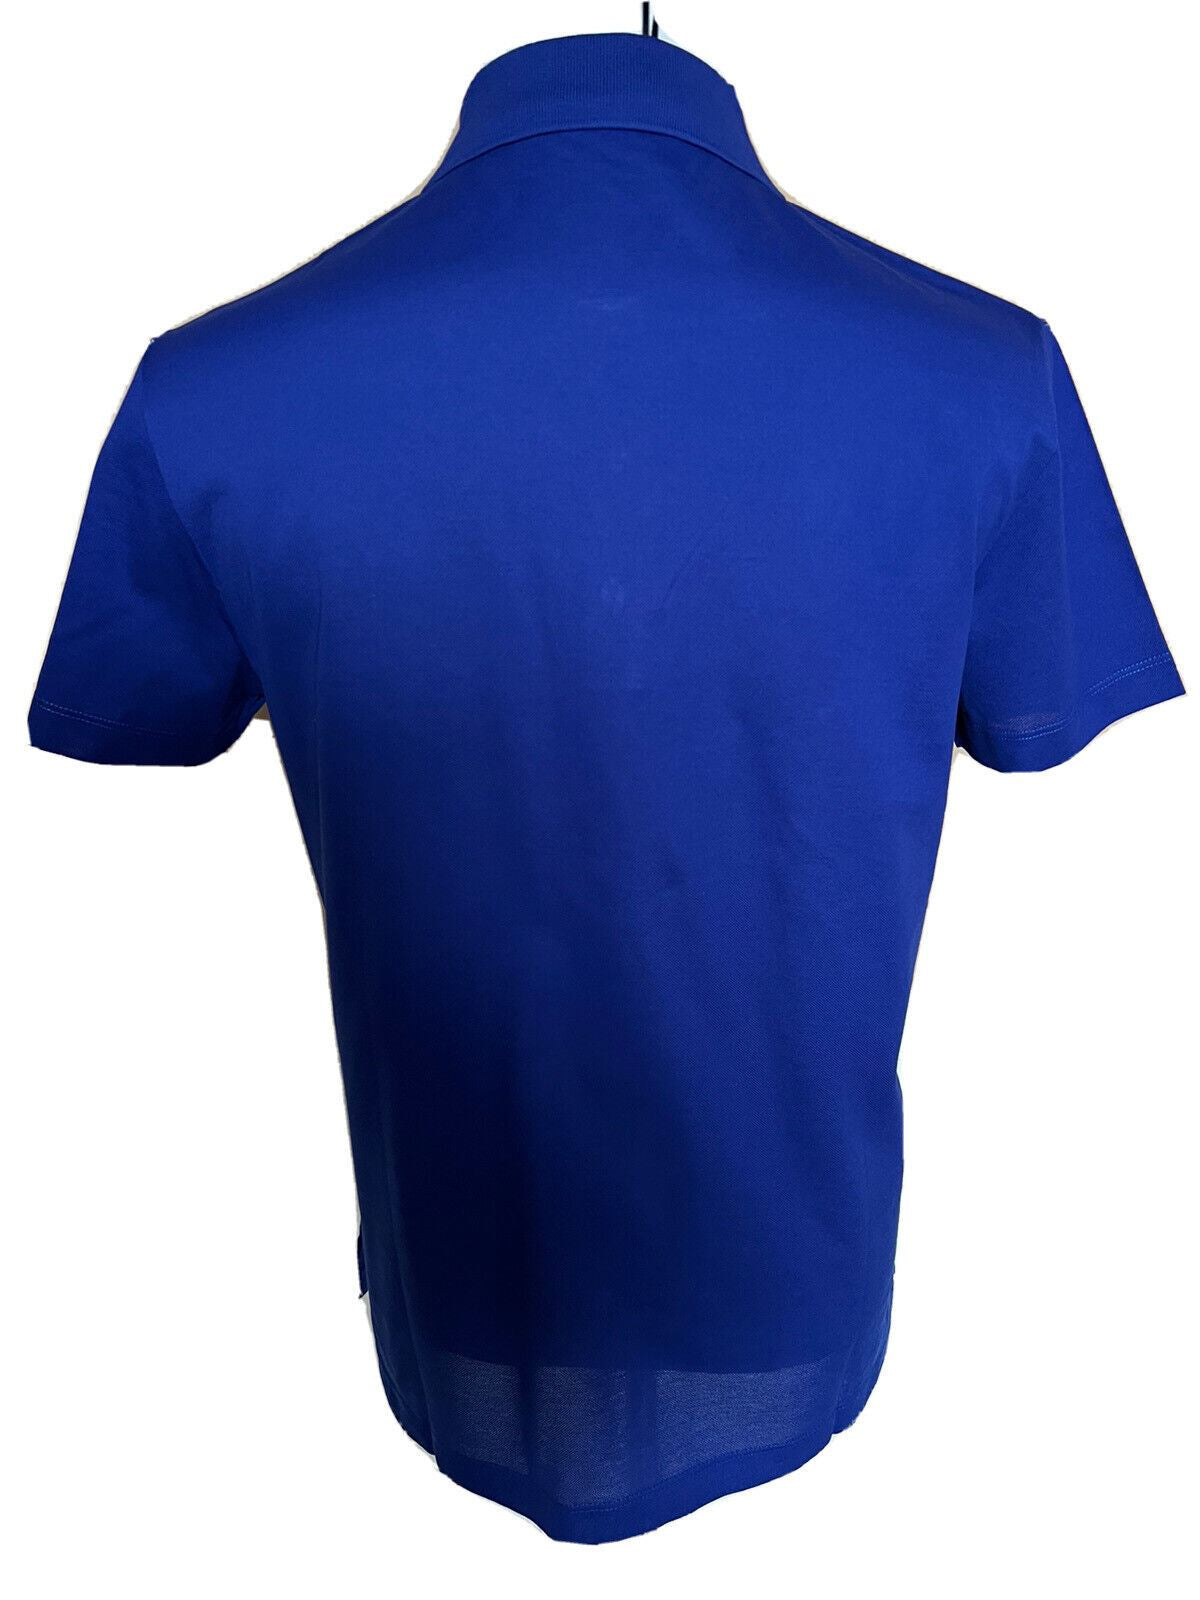 Синяя хлопковая рубашка-поло Tailor Fit Versace Medusa, размер NWT 425 долларов США, M A87427, сделано в Италии.